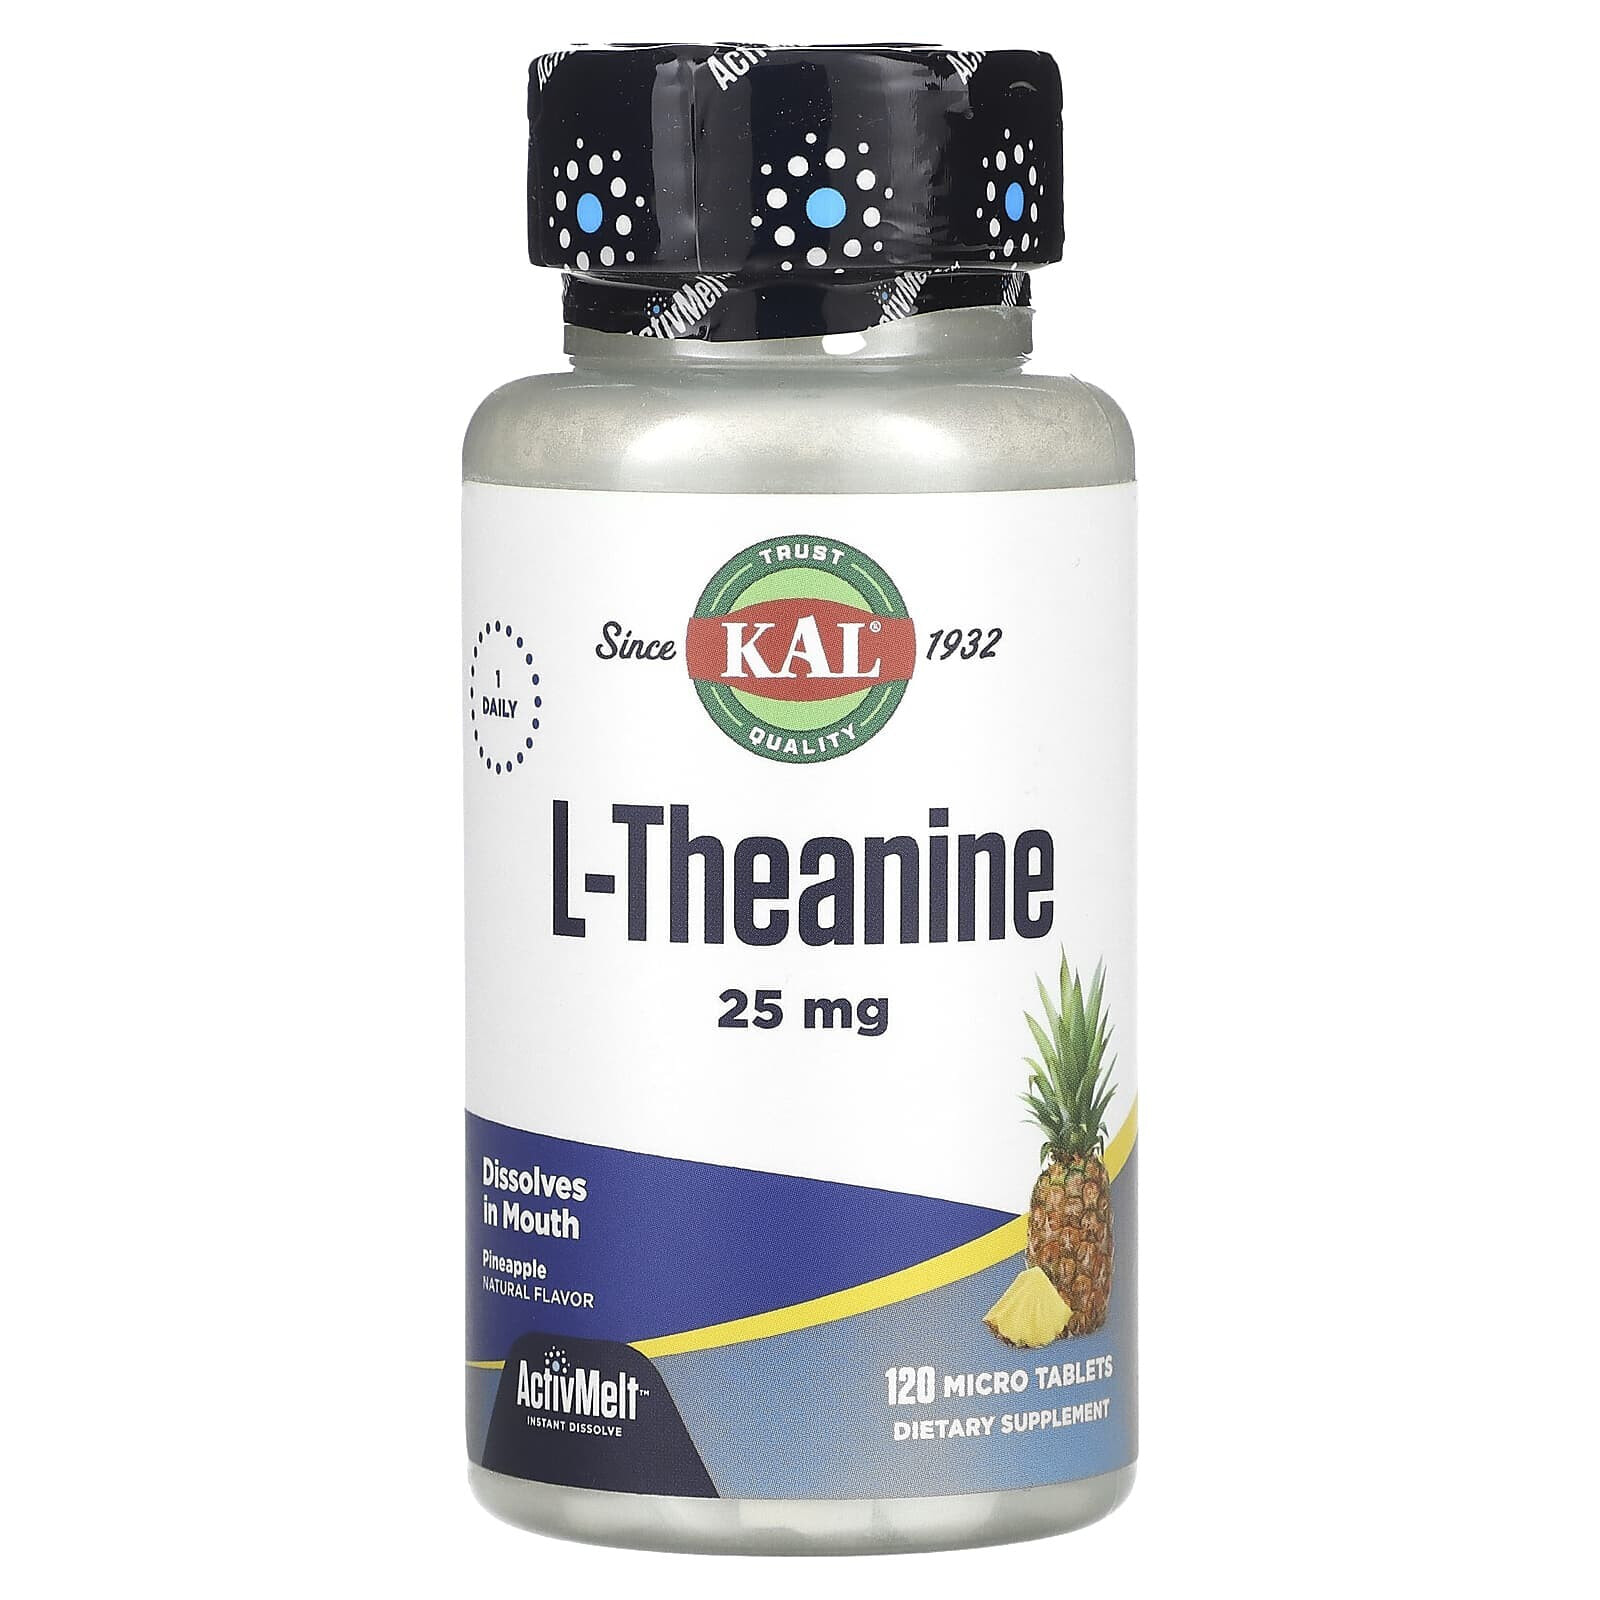 КАЛ, L-теанин, ActivMelt, ананасовая мечта, 25 мг, 120 микротаблеток (Товар снят с продажи) 